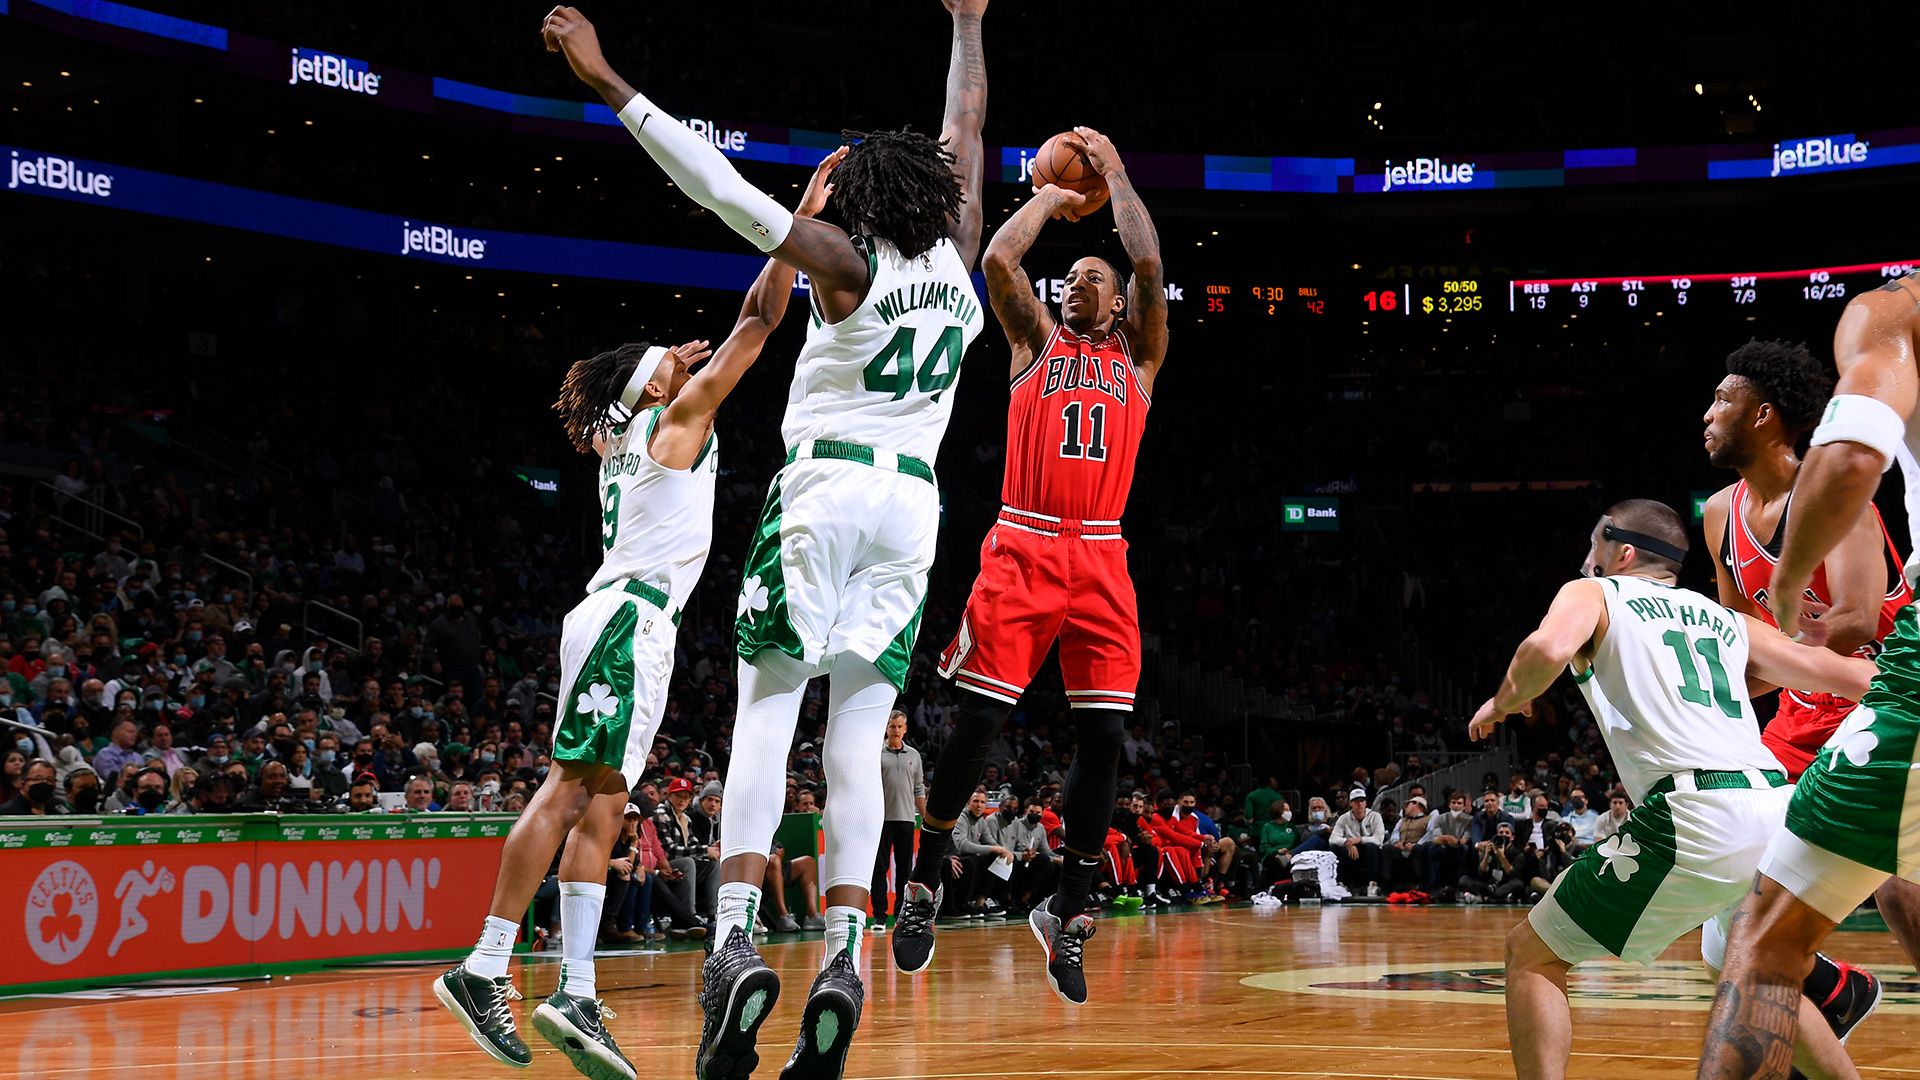 DeRozan scores 37 as Bulls beat Celtics 128-114 to reach 6-1